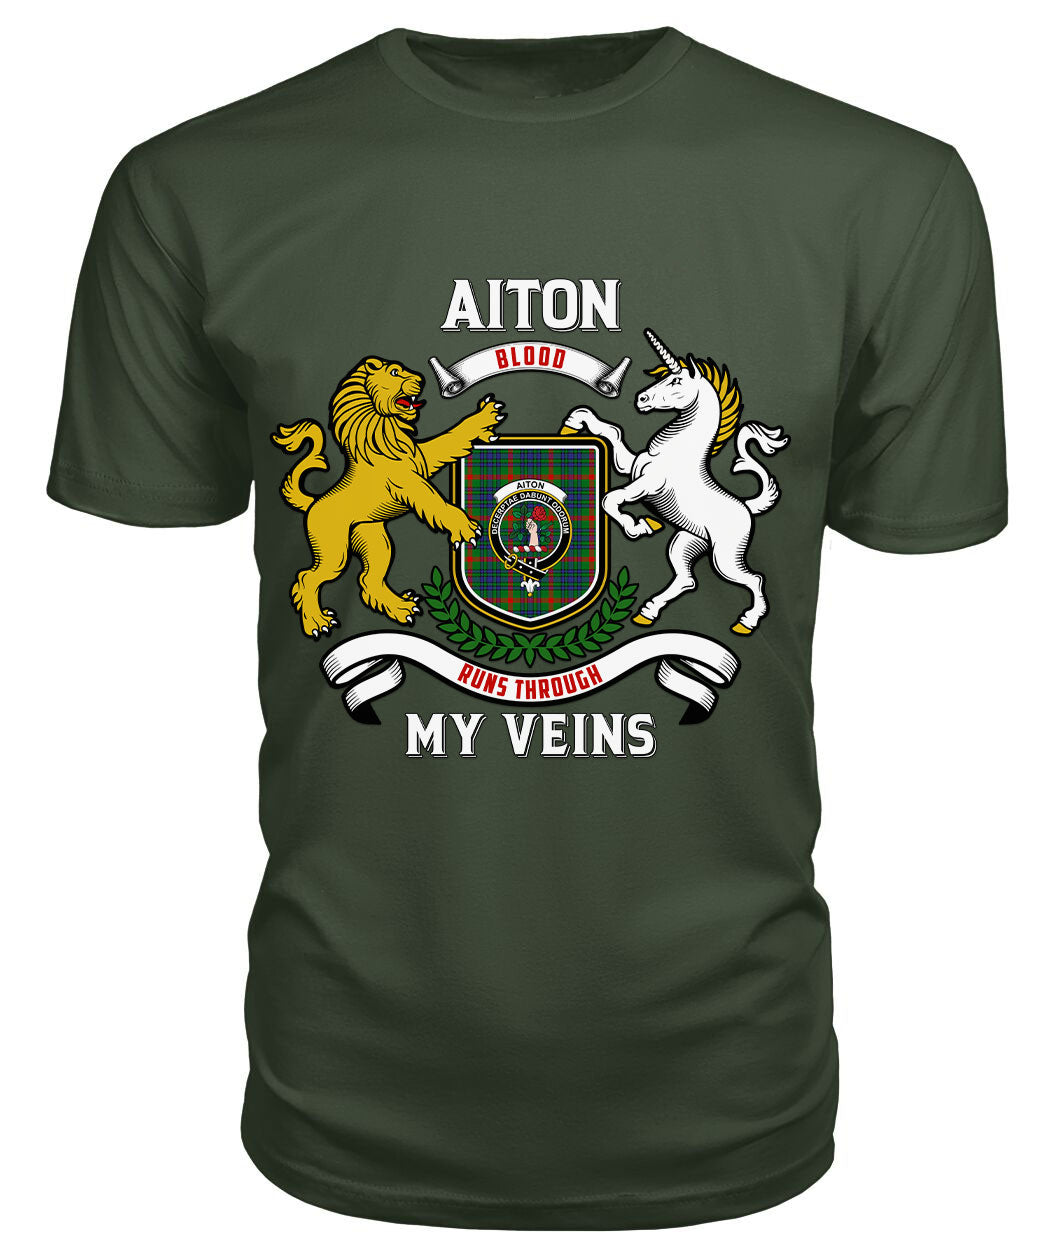 Aiton Tartan Crest 2D T-shirt - Blood Runs Through My Veins Style